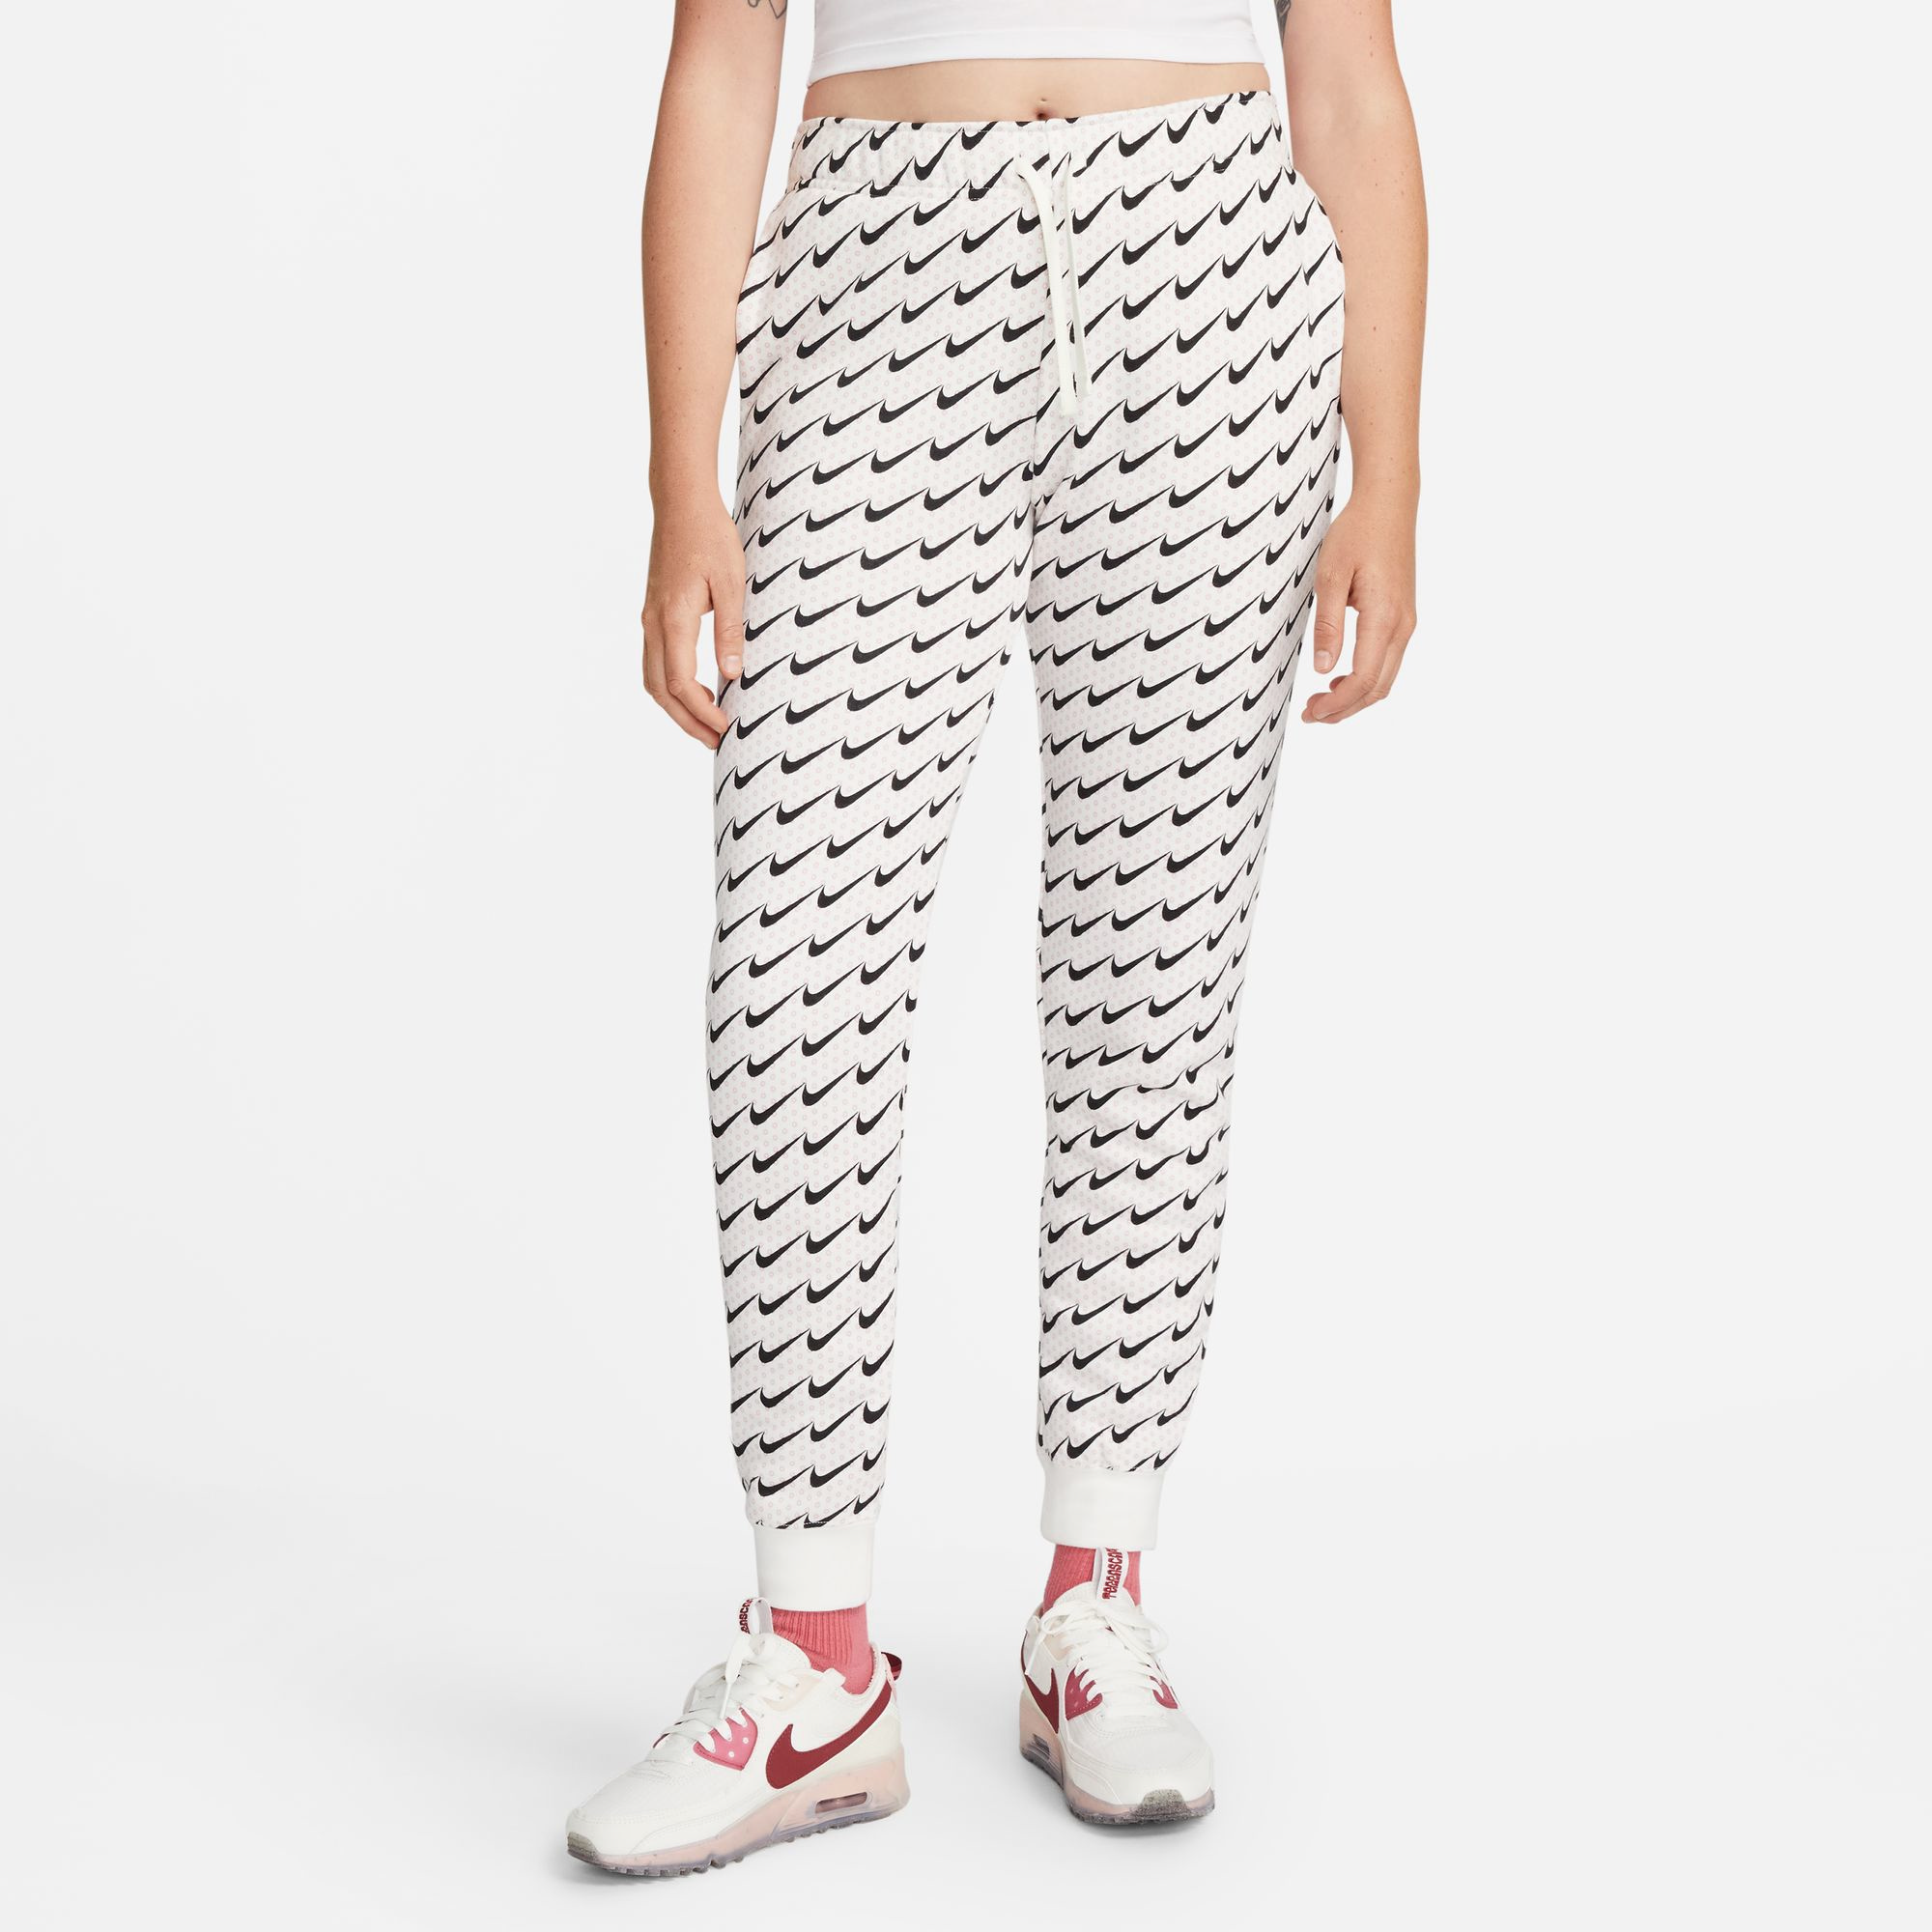 Nike Women's Sportswear Club Fleece Leopard Pants / Black